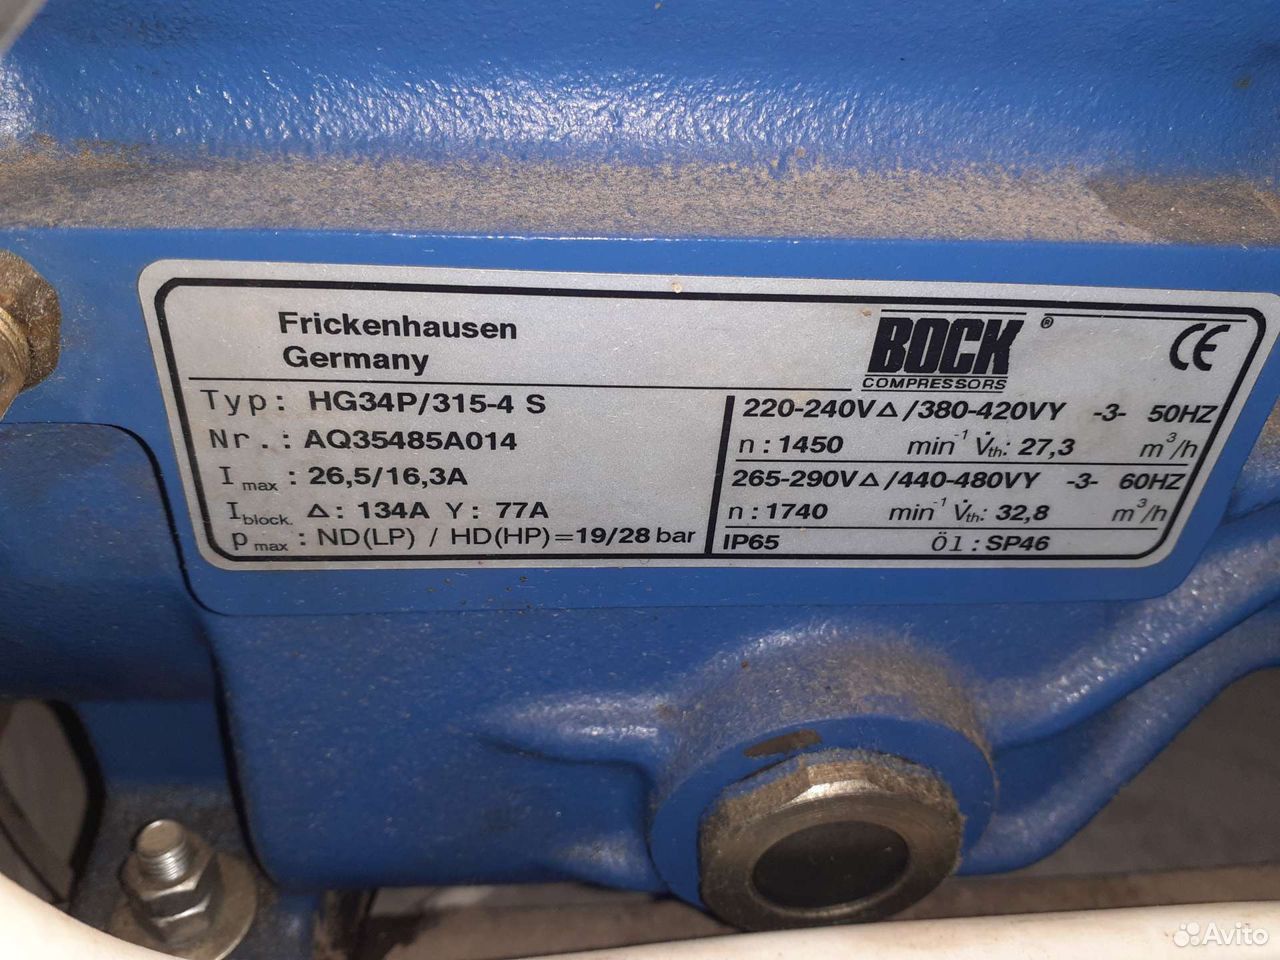  Холодильный агрегат на базе компрессора Bock  89226838027 купить 2